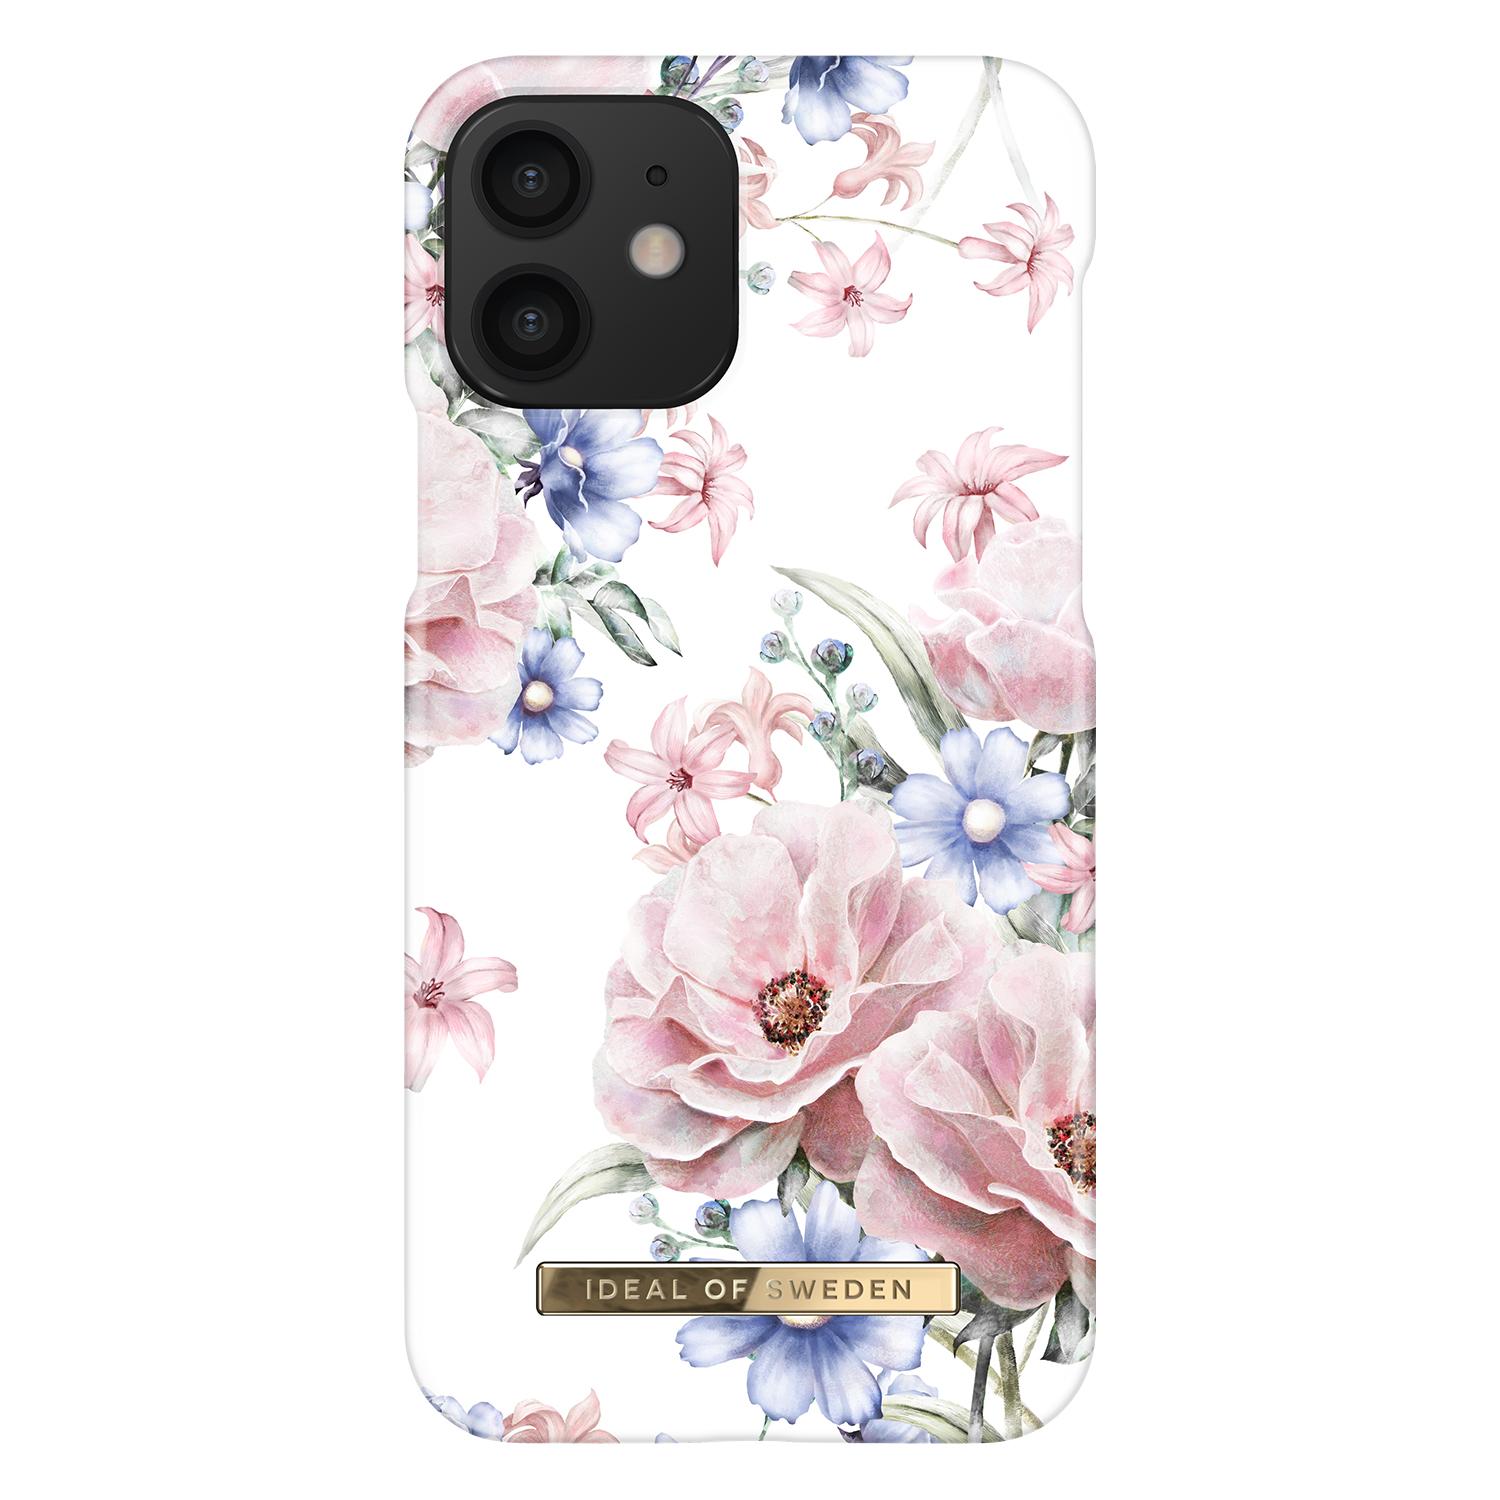 Coque Fashion Case iPhone 12/12 Pro Floral Romance